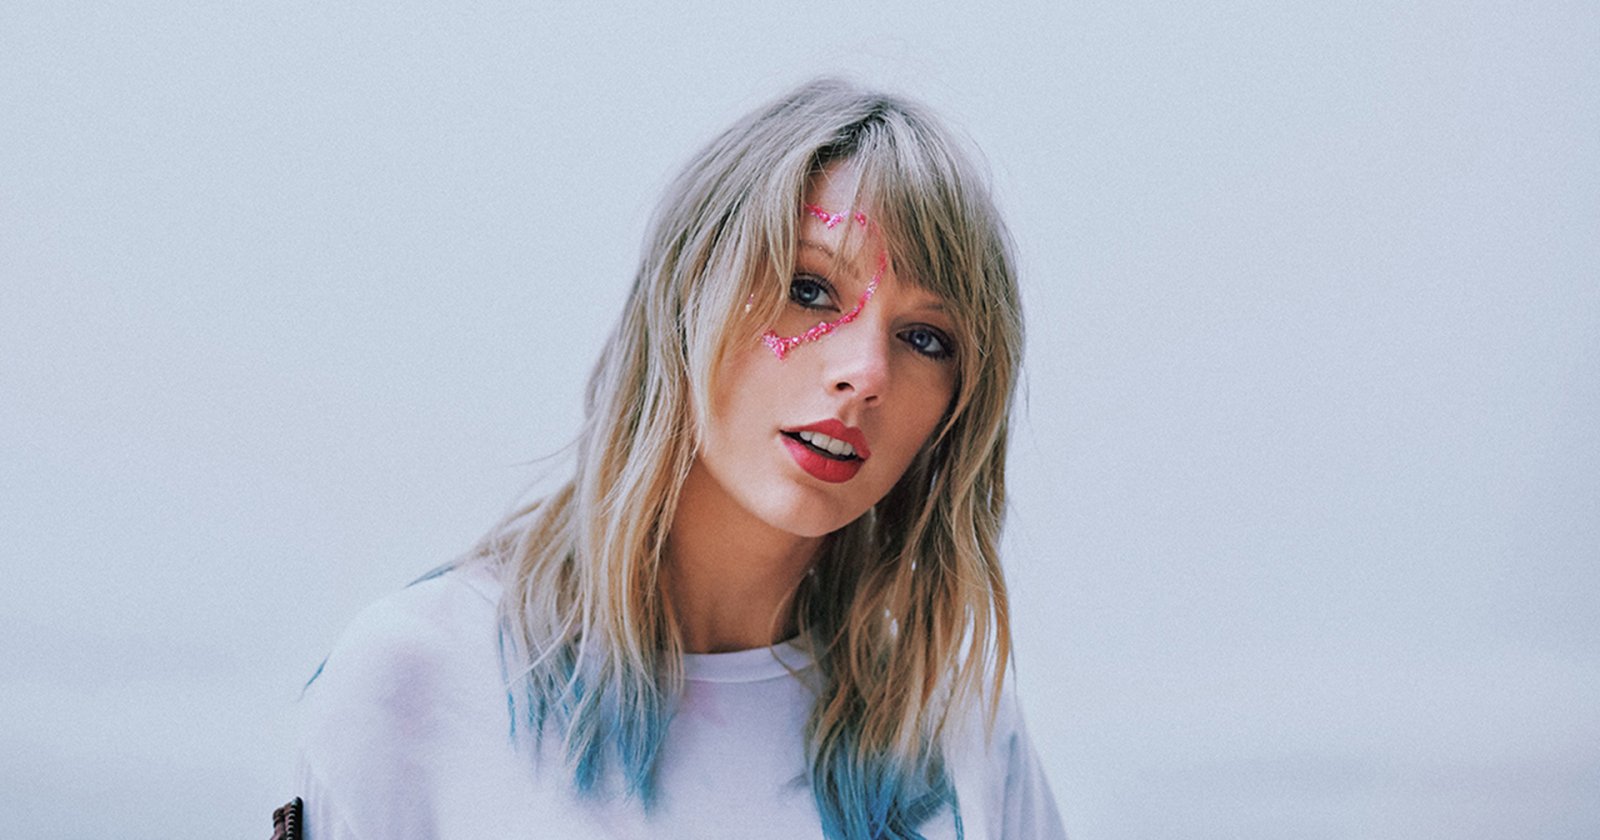 ปังไม่หยุด! เพลง “Cruel Summer” ของ Taylor Swift เมื่อปี 2019 ทะยานขึ้นอันดับ 1 บิลบอร์ด